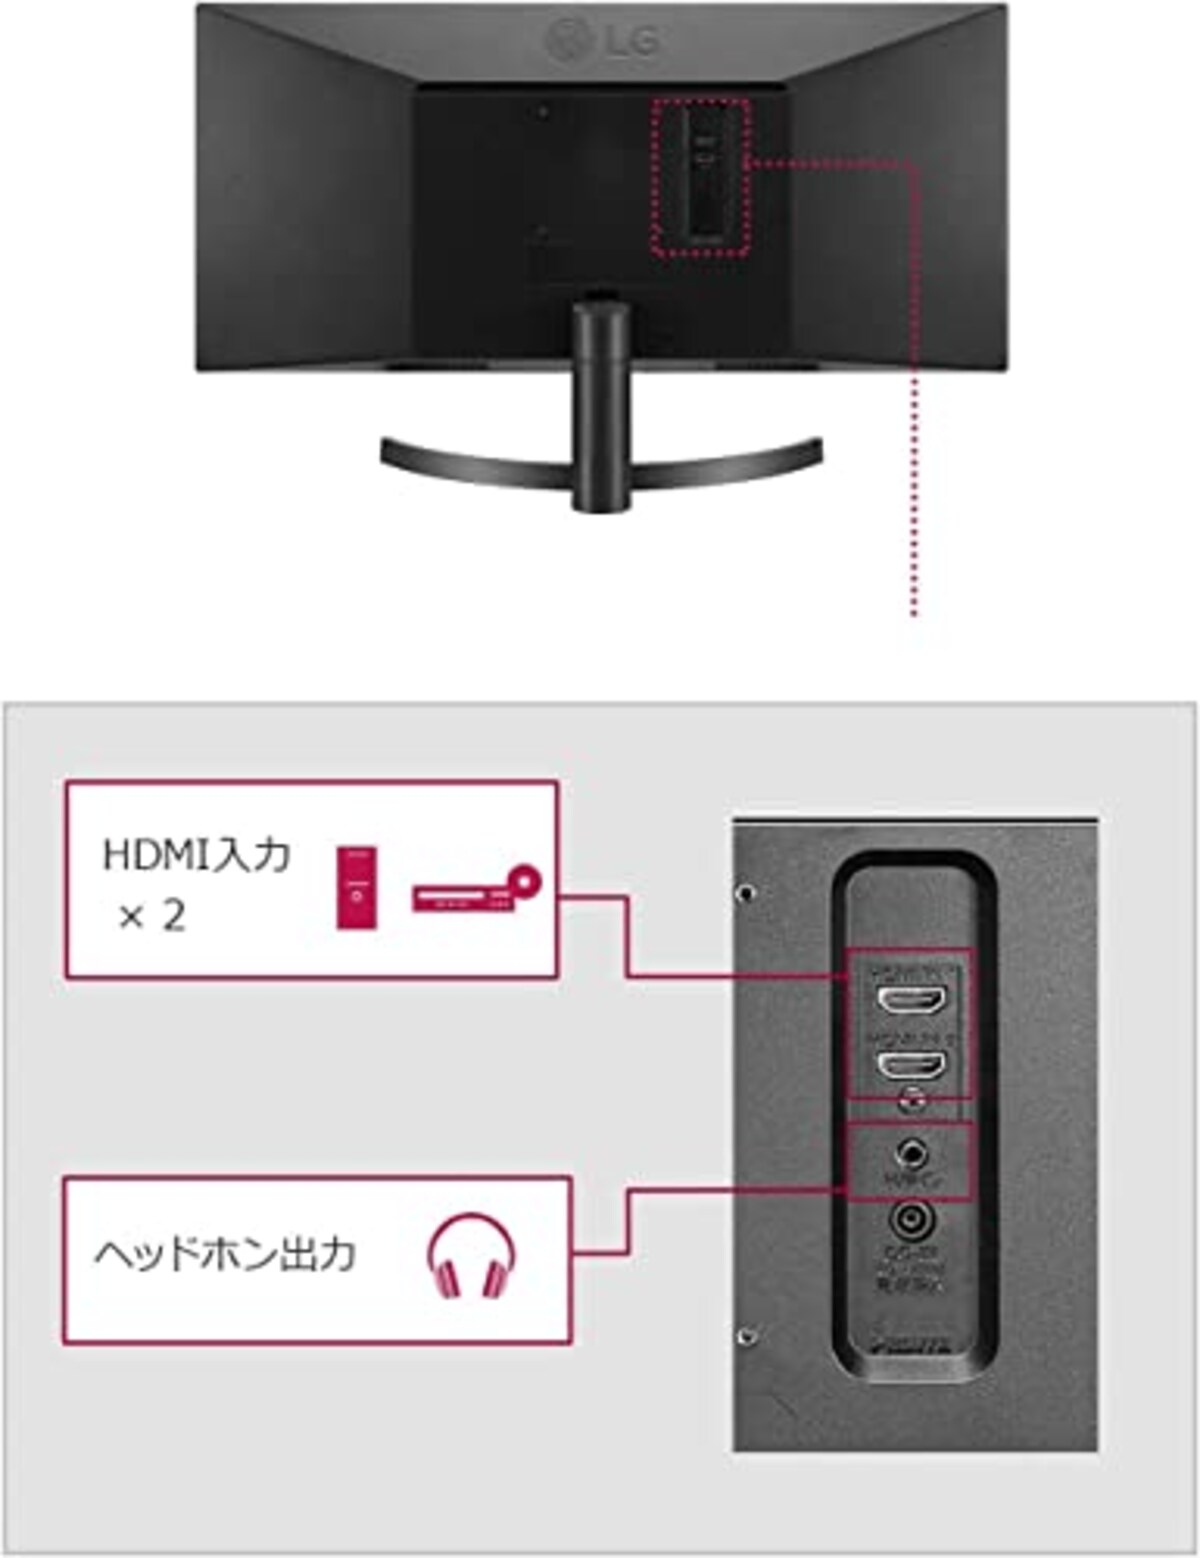  【Amazon.co.jp 限定】LG モニター ディスプレイ 29WL500-B 29インチ /作業効率アップ、ビジネス、プログラミング、トレーディング、グラフィック、映画/21:9 平面ウルトラワイド(2560×1080) / HDR/IPS 非光沢/FreeSync対応/ブルーライト低減、フリッカーセーフ/HDMI×2 / 3年安心・無輝点保証画像10 